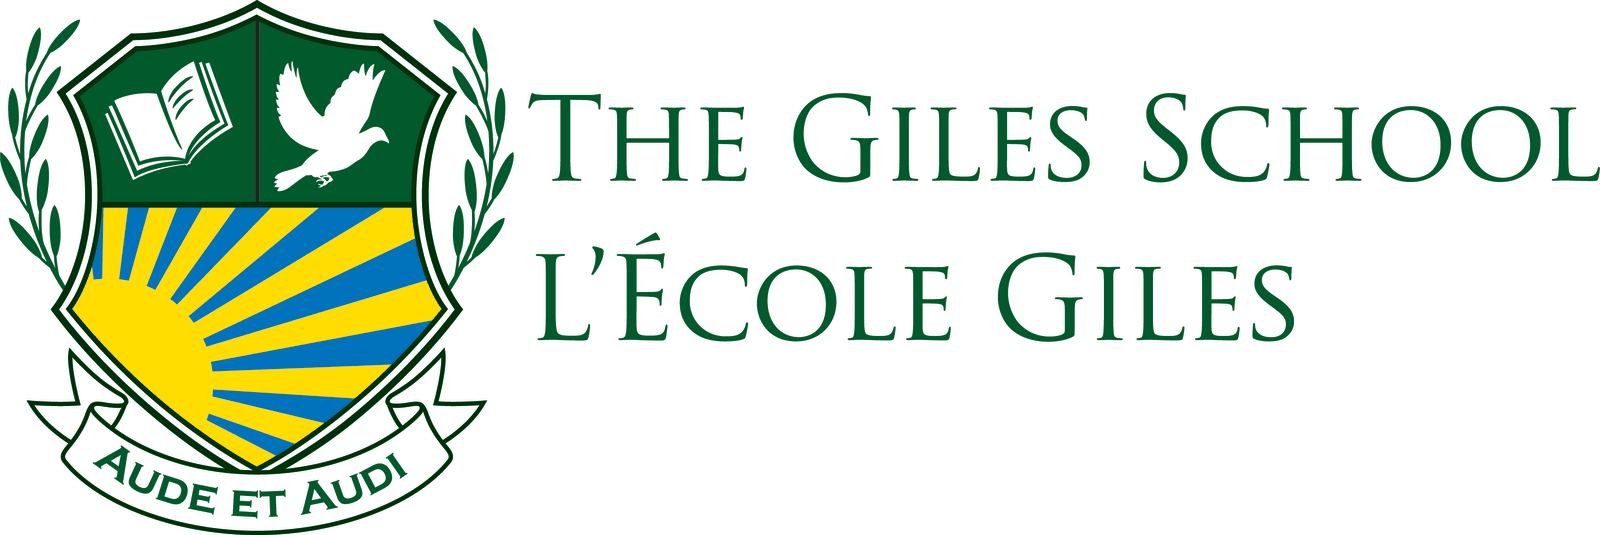 The Giles School